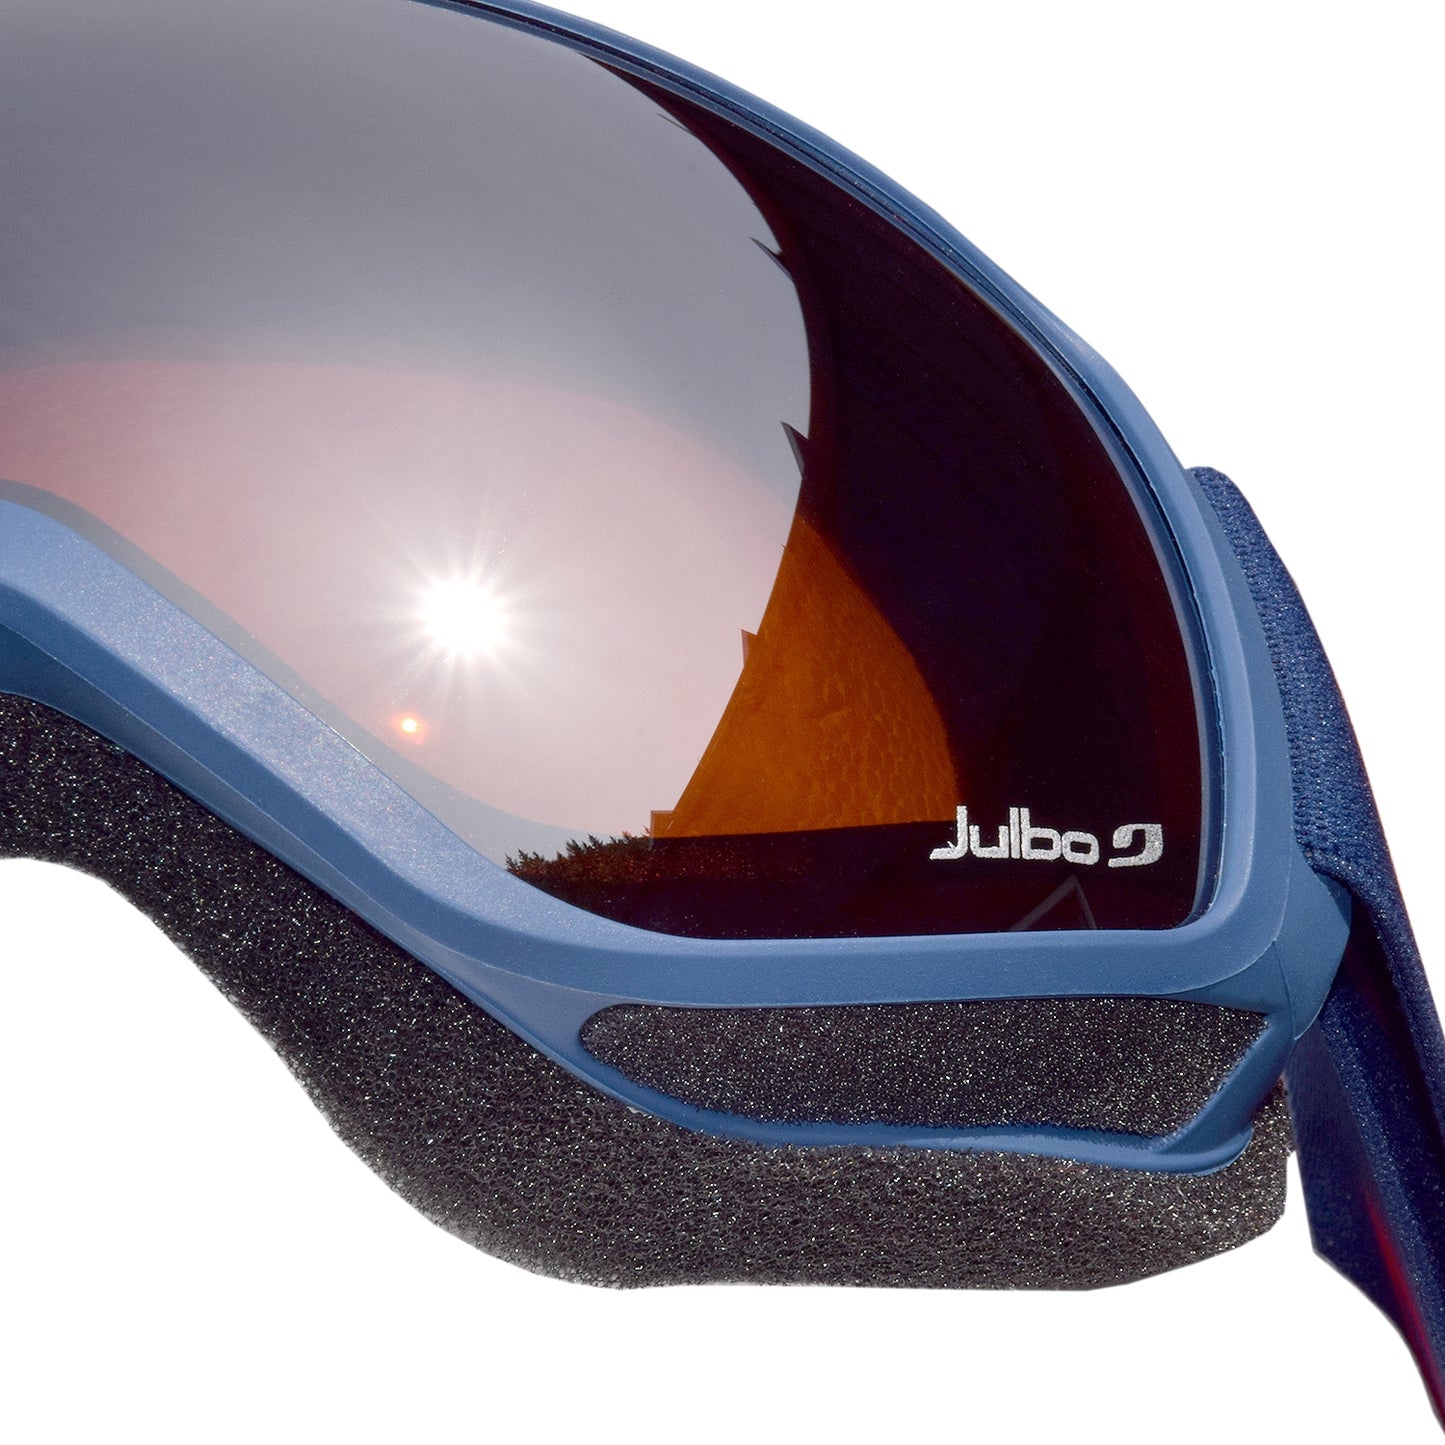 JULBO Ski Goggles Ison